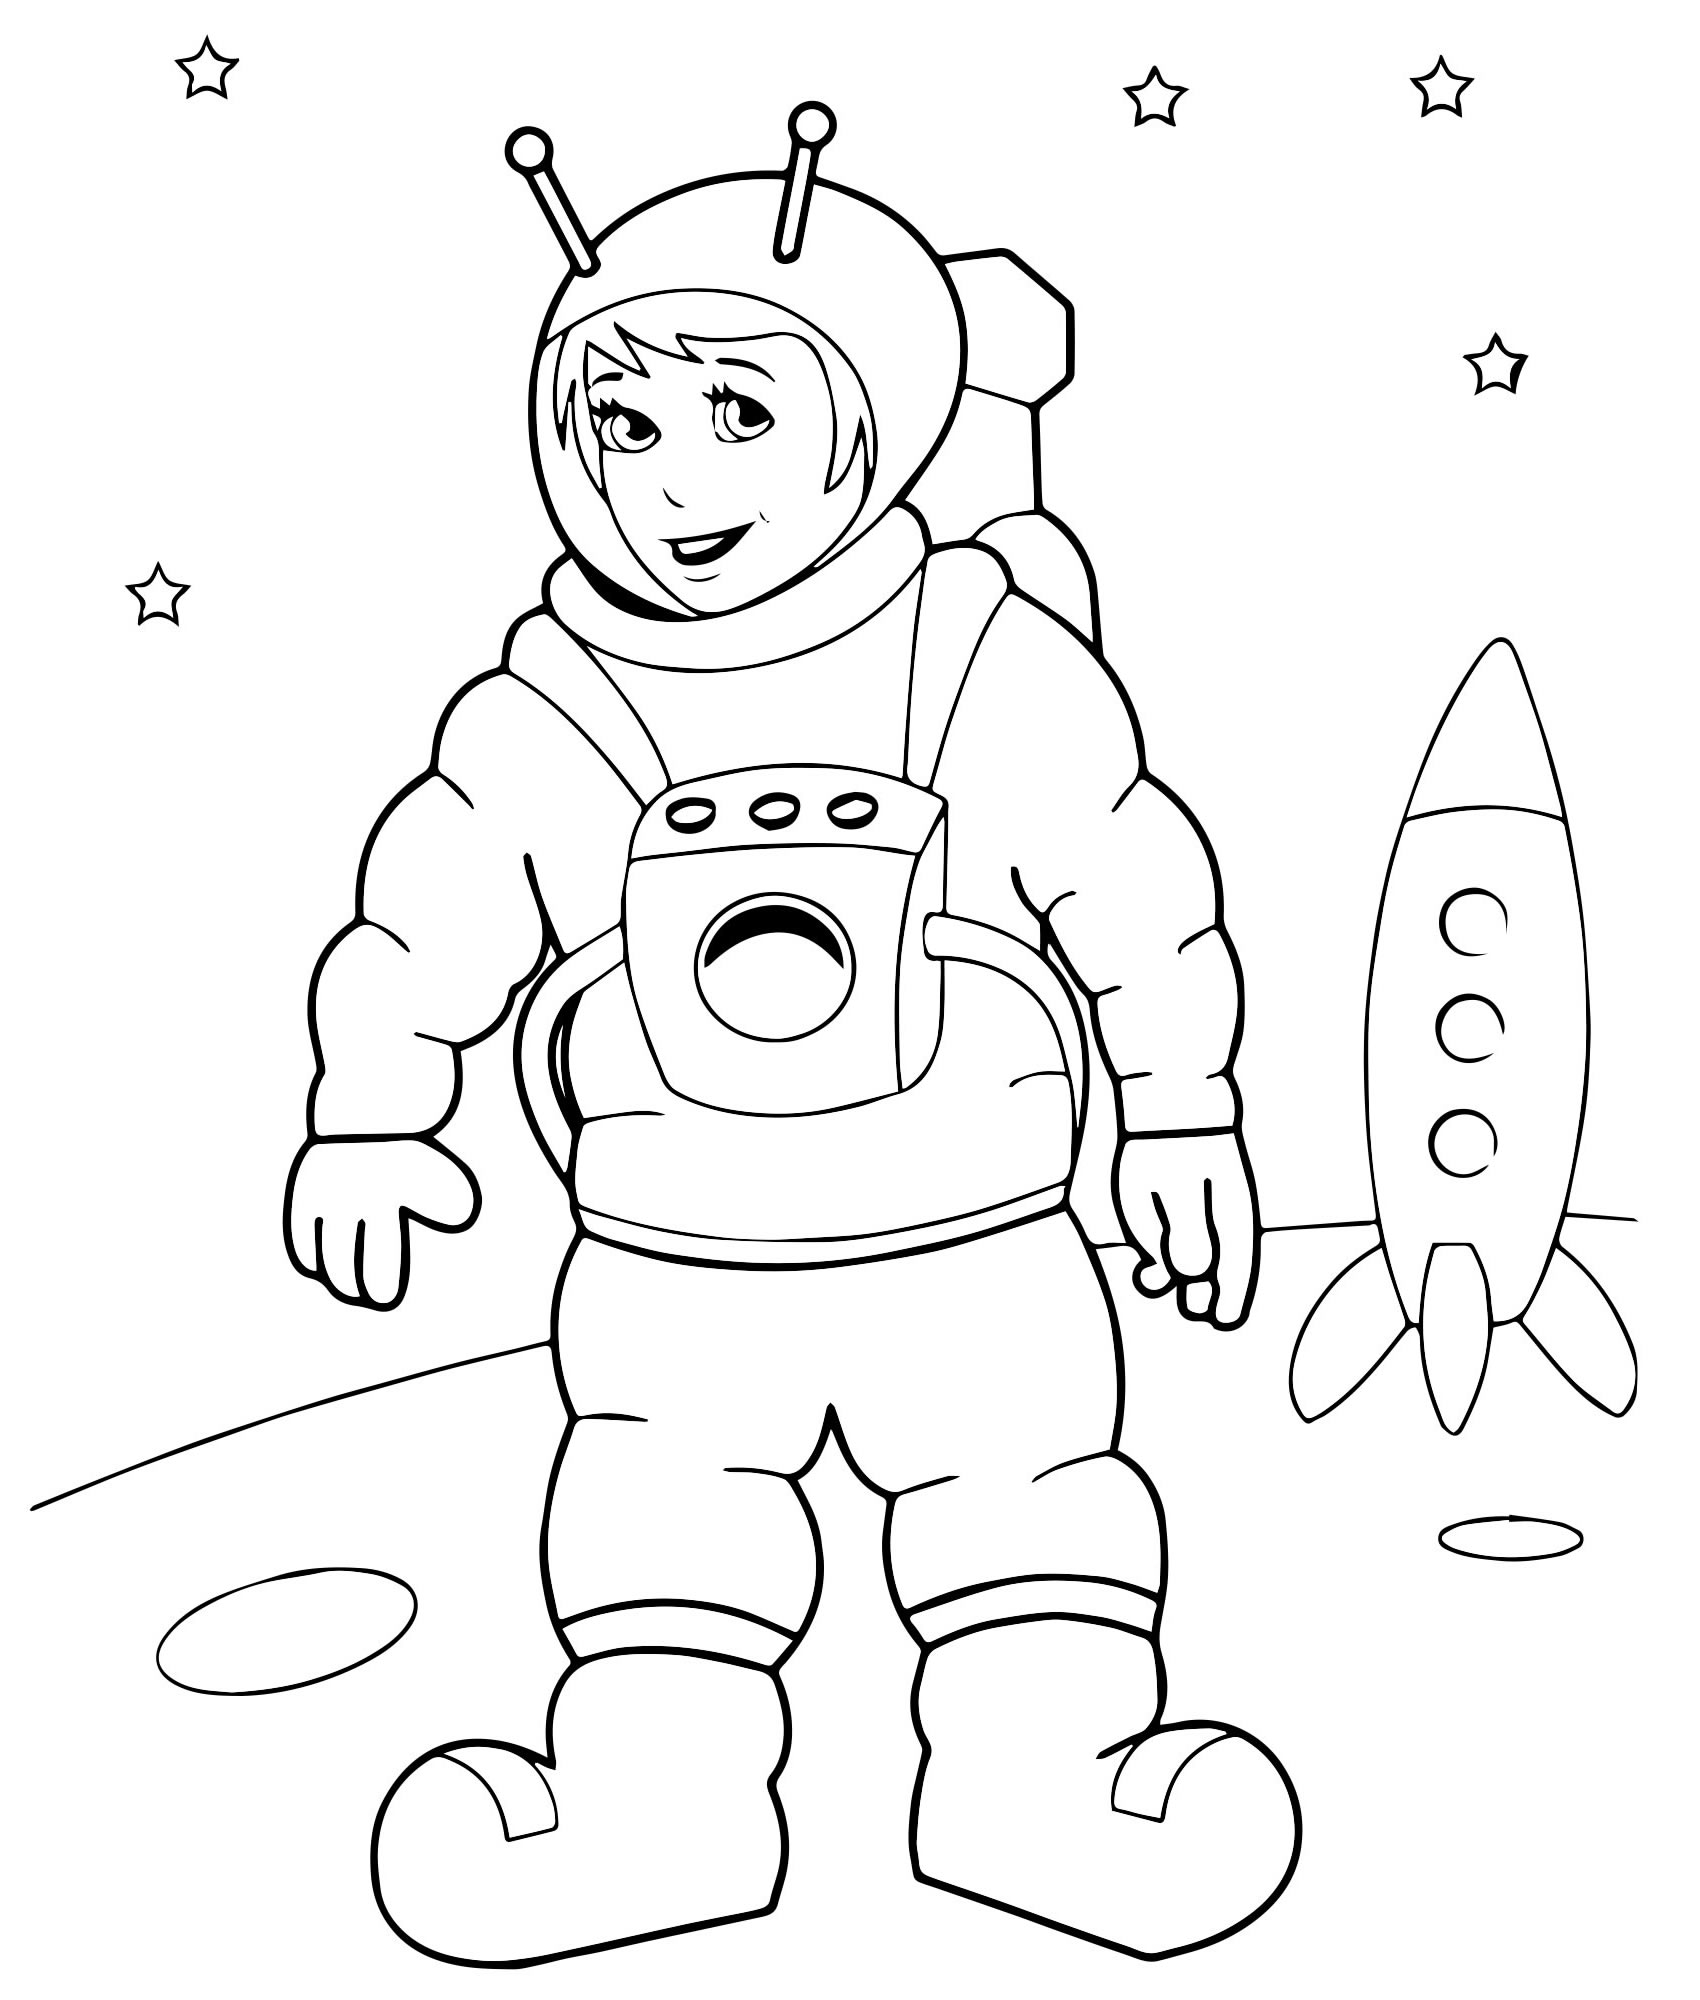 Раскраска про космос для детей 3 лет. Космонавт раскраска для детей. Космос раскраска для детей. Космонавтика раскраски для детей. Раскраска. В космосе.